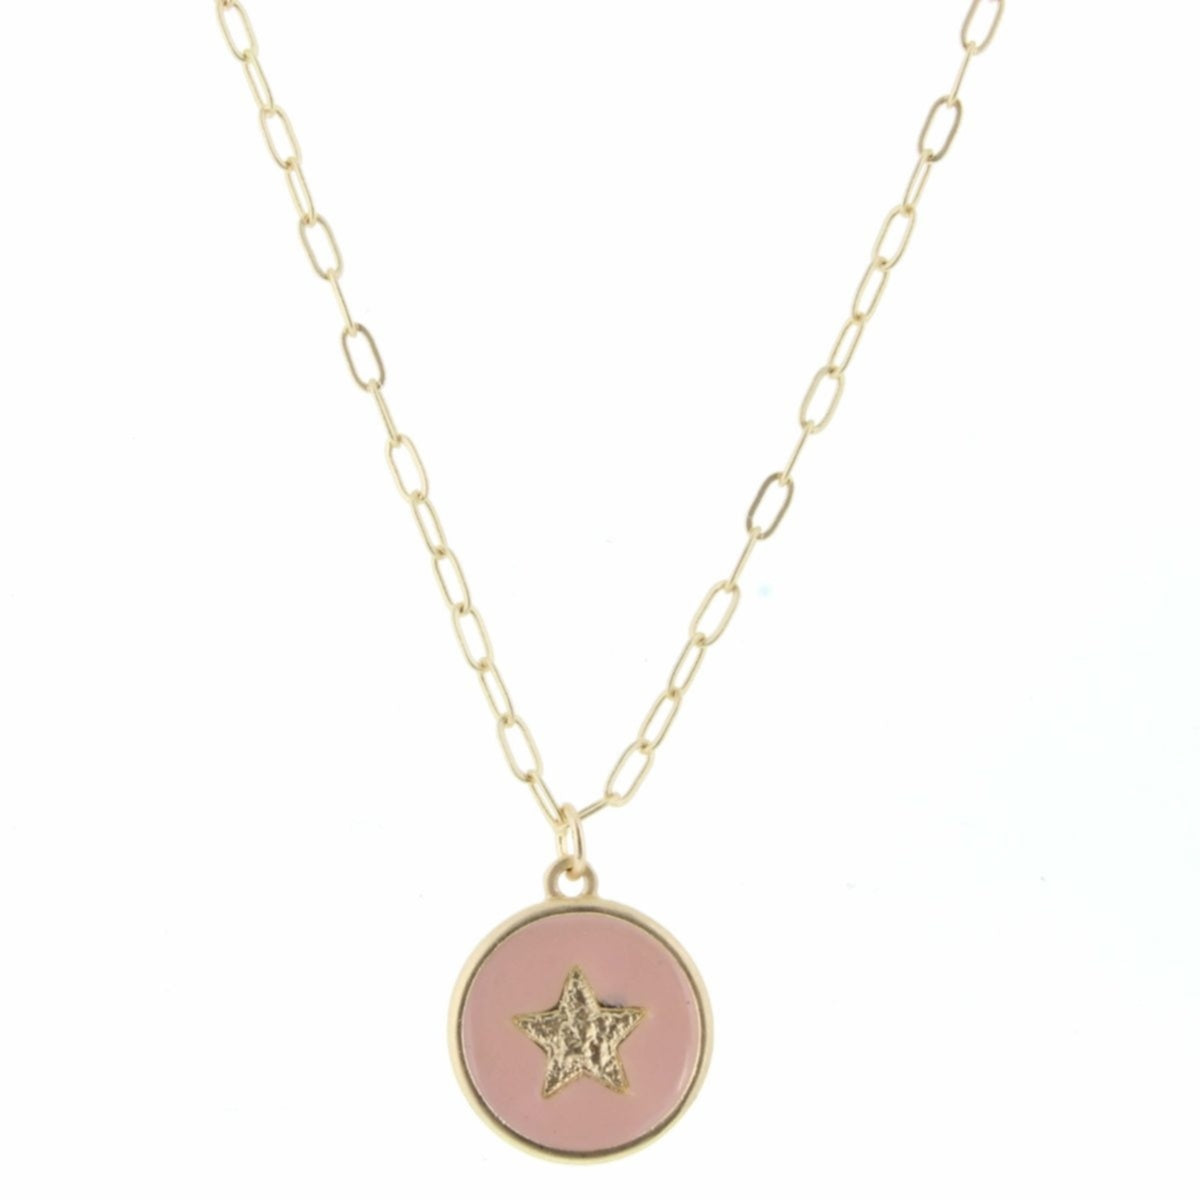 Cadena de oro de 18-24" y collar ajustable con amuleto de estrella de esmalte ruborizado 